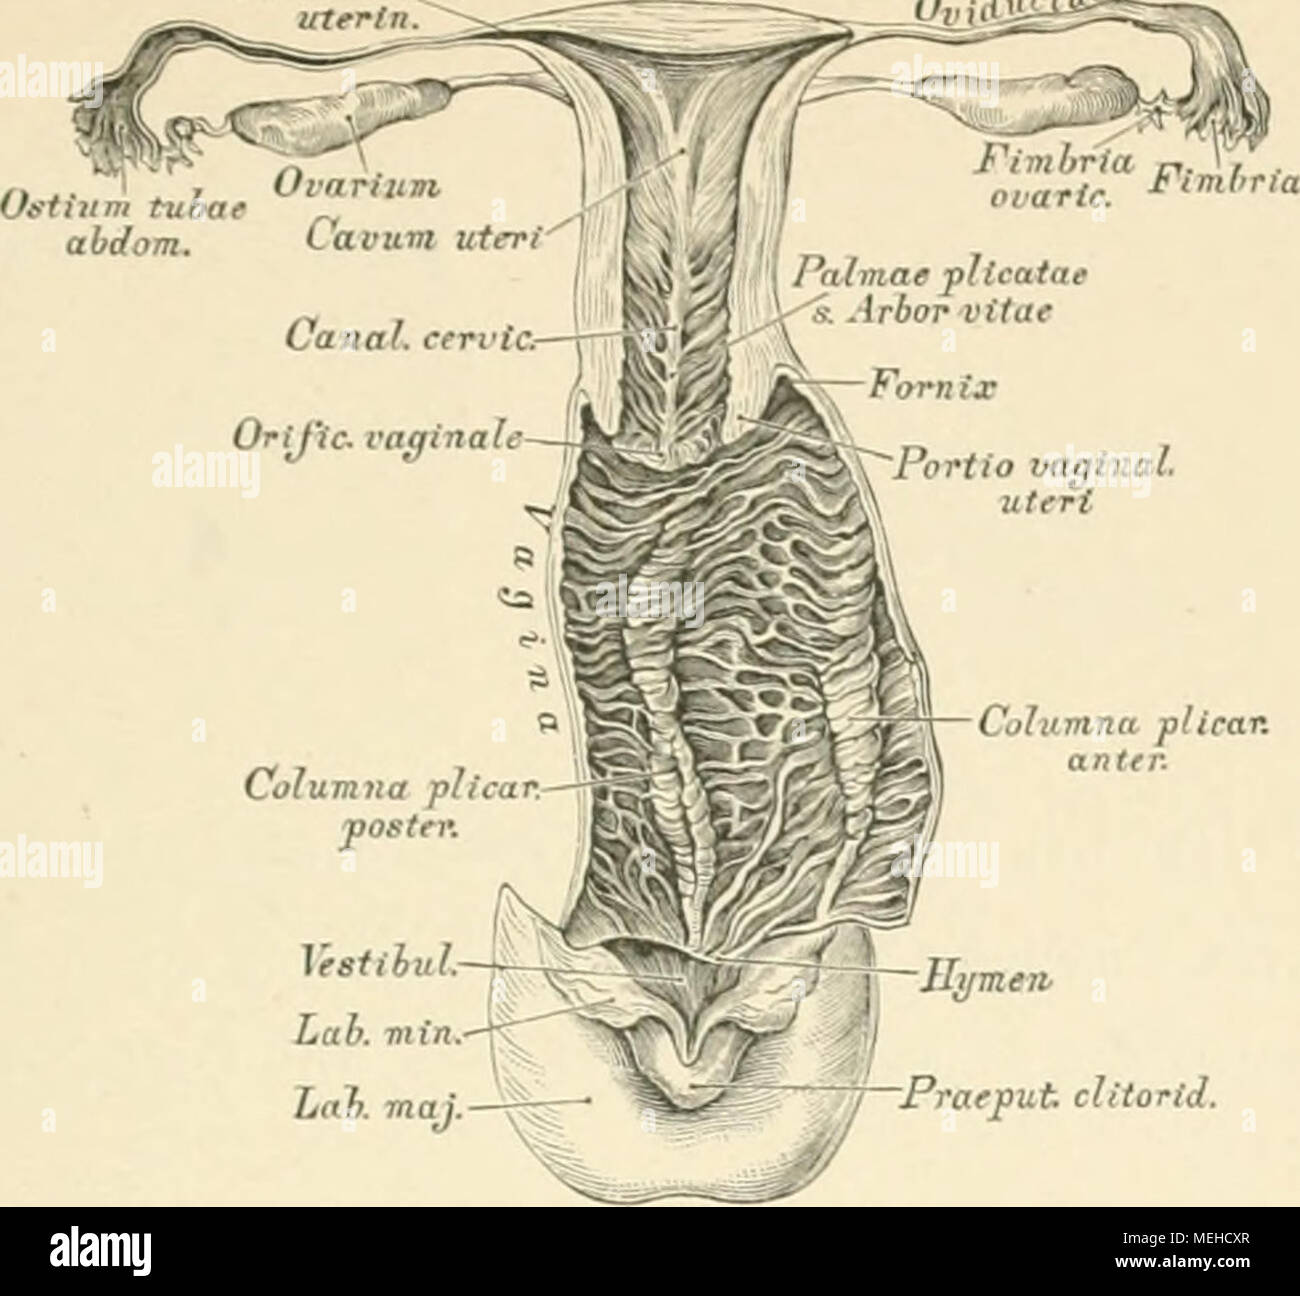 . Die descrittivo topographische und anatomie des Menschen . VestibÃ¼L. Lab. min. Lab. maj 486. Geschlechtsorgane eines neugeborenen MÃ¤dcheilS. Die GebÃ¤rmutter in der Mittellinie hinteres, die Schelda in der linken Seitenlinie erÃ¶ffnet. NatÃ¼Rliche GrÃ¶sse. Die GebÃ¤rmutter, utero, ist ein apnu â perde organo, zwischen Biagio und Mastdarm gelegen; von birnfÃ¶rmiger Gestalt, von vorne nach hinten etwas abgeplattet. Grund, Fundus, das heisst verdickte obere Ende; auf dieses ler K"ip r. Corpus, welcher sich zum cylindrischen Hals, cervice, zuschmÃ¤lert; i."li in den grossen Schamlippen zu v Foto Stock